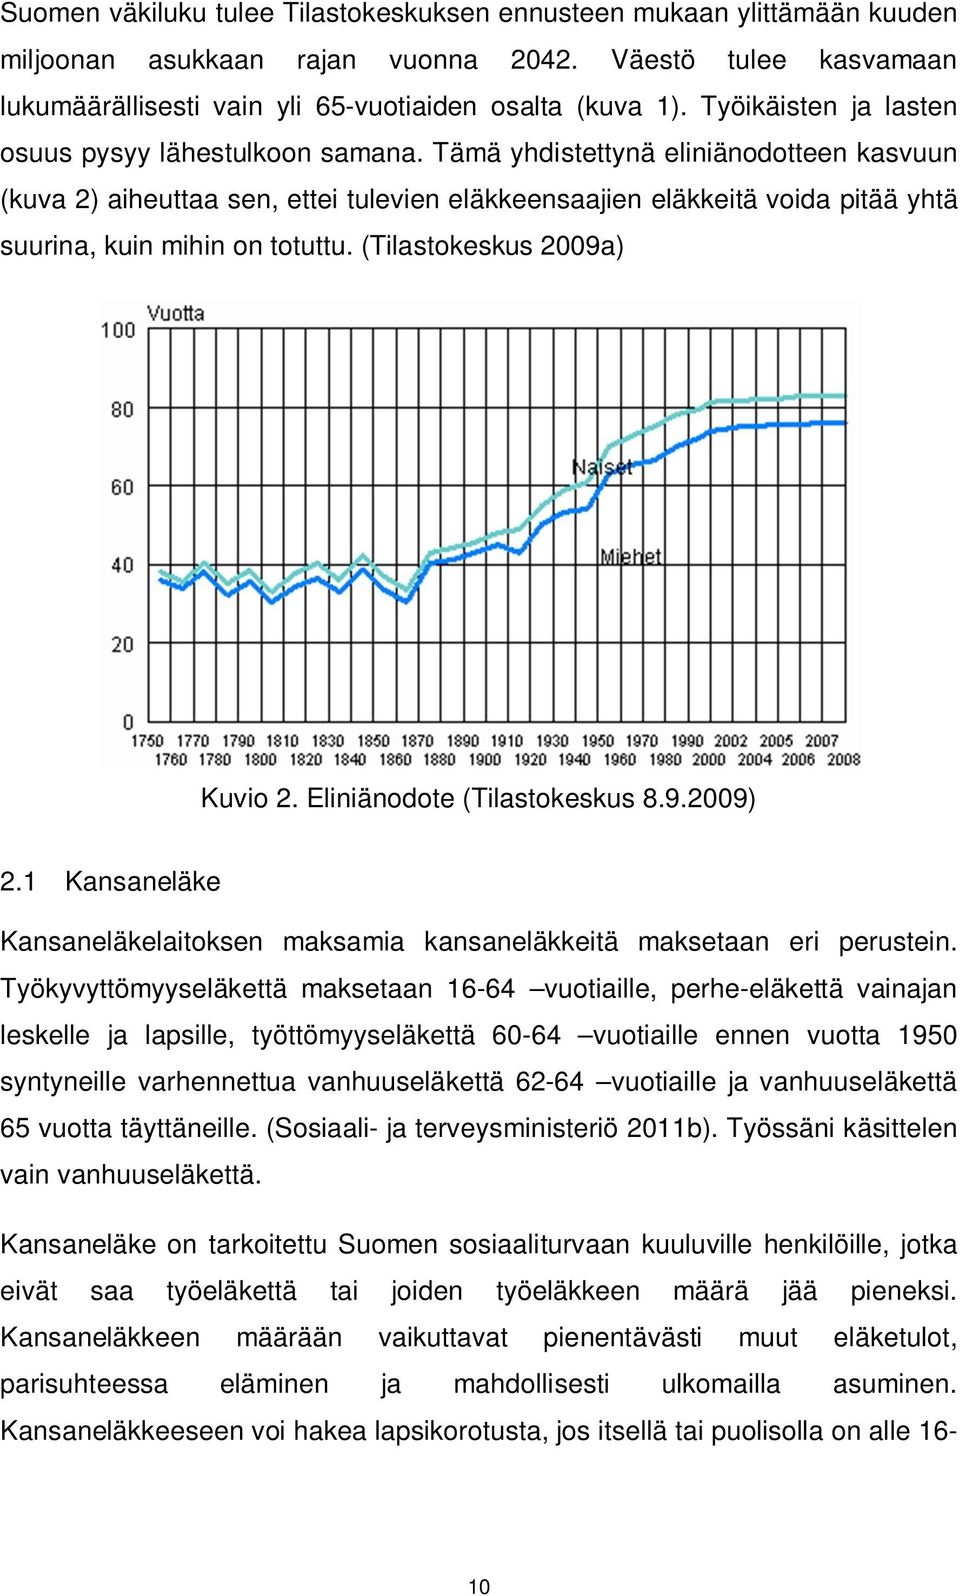 Tämä yhdistettynä eliniänodotteen kasvuun (kuva 2) aiheuttaa sen, ettei tulevien eläkkeensaajien eläkkeitä voida pitää yhtä suurina, kuin mihin on totuttu. (Tilastokeskus 2009a) Kuvio 2.